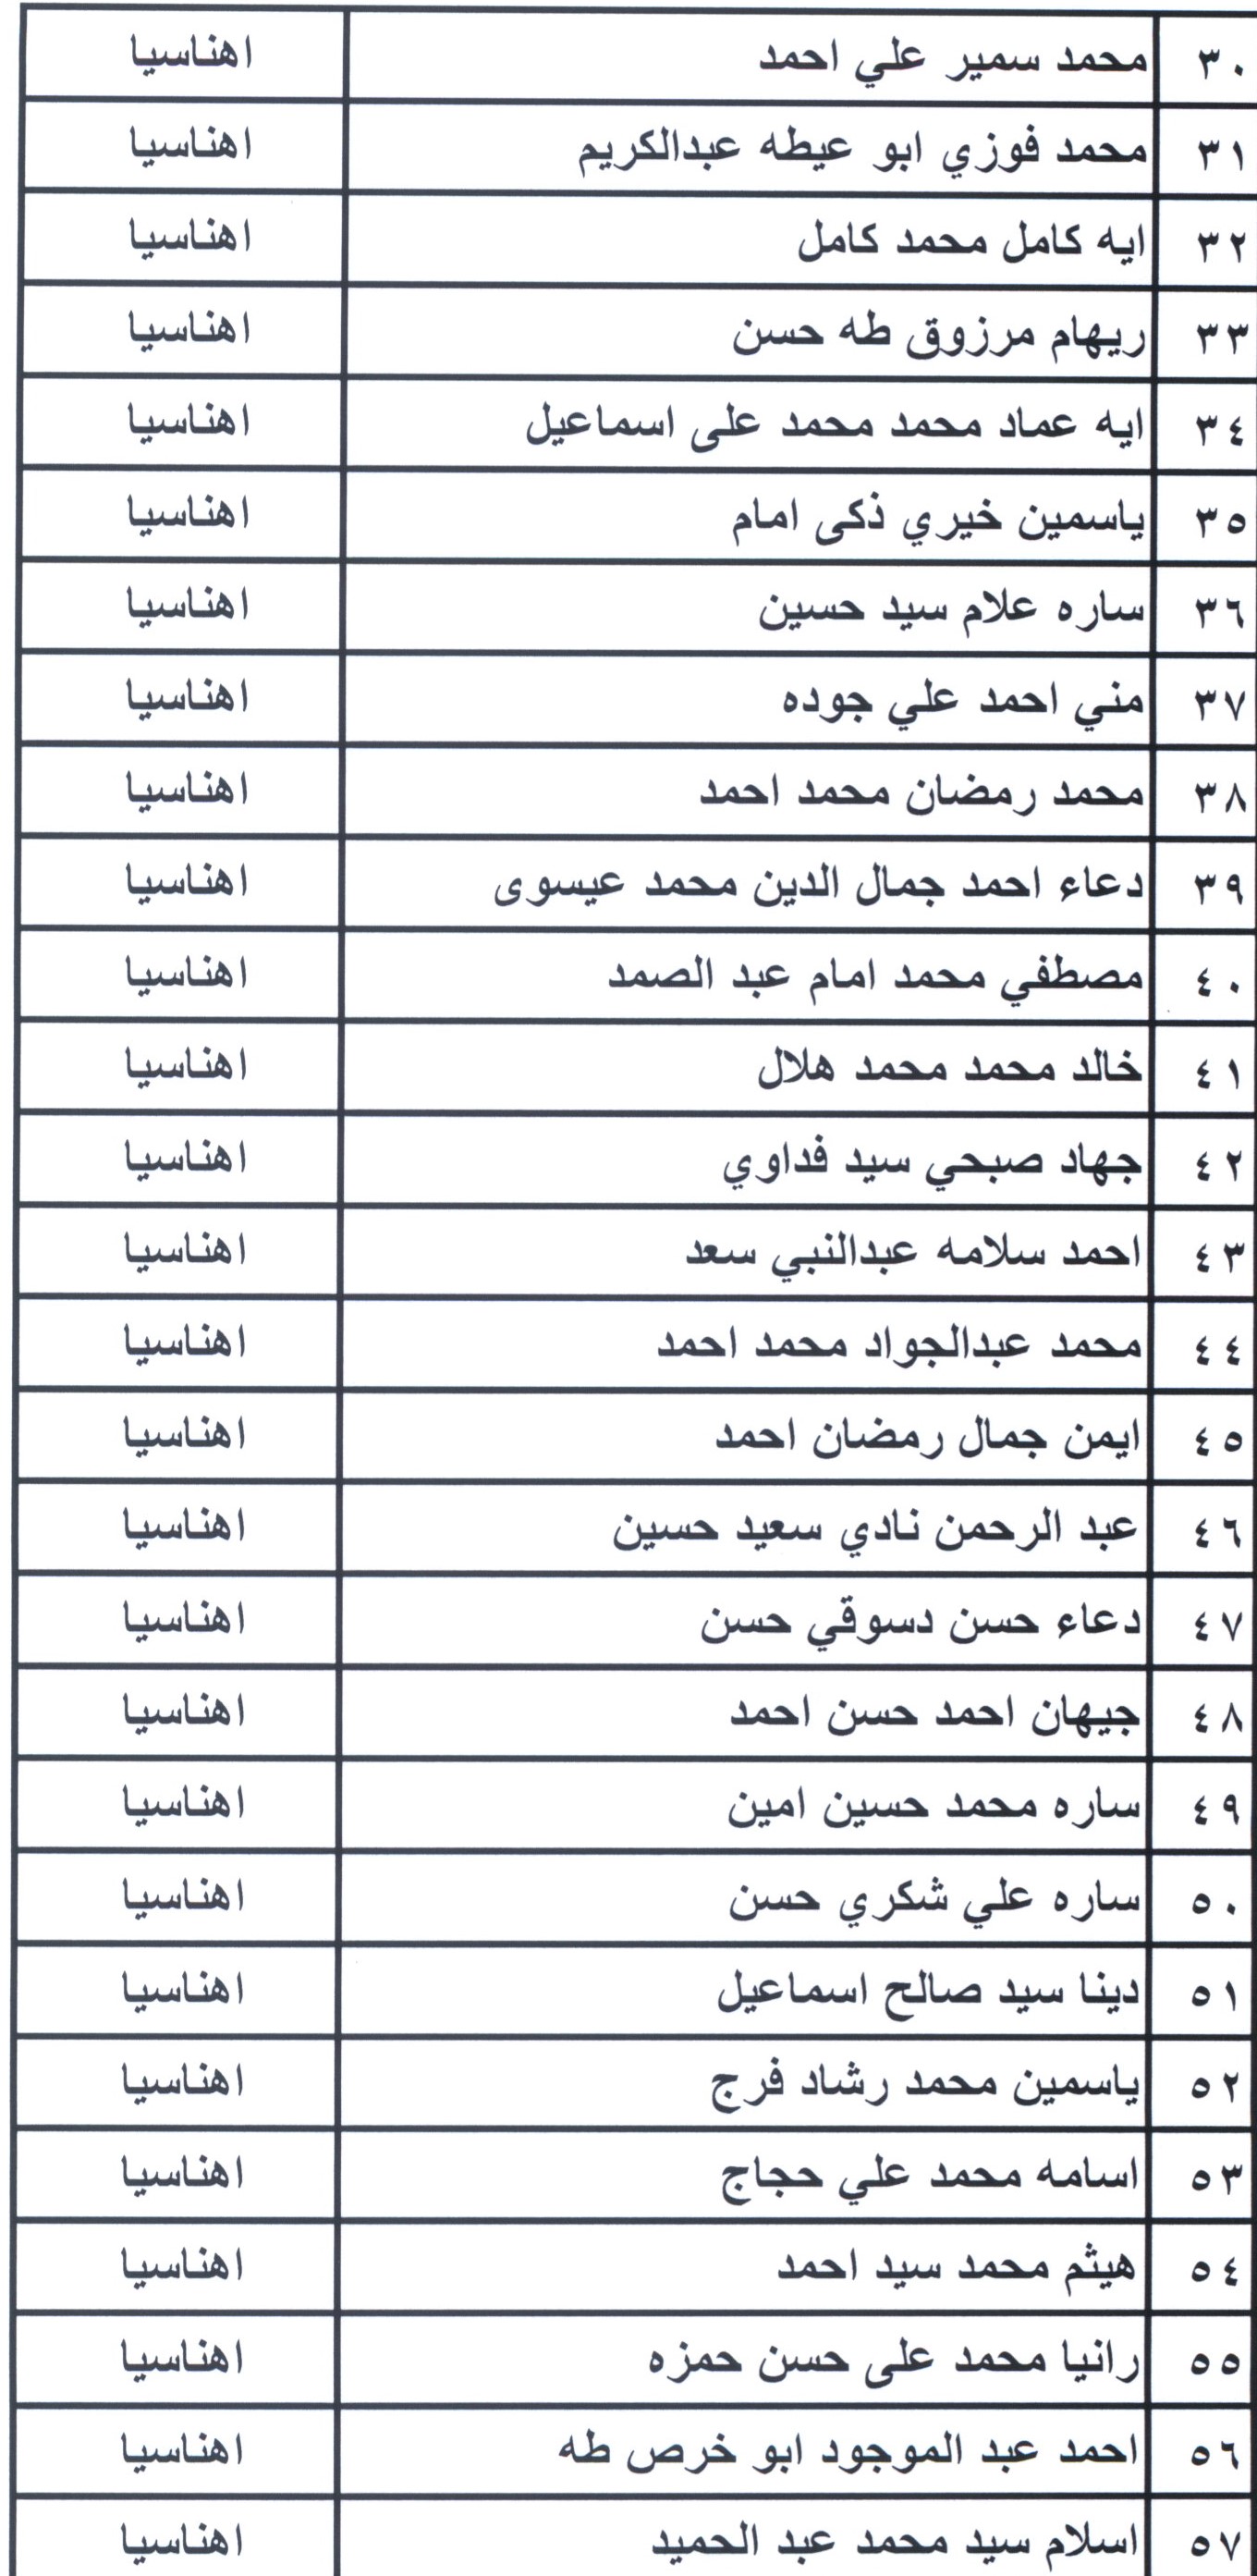 أسماء مرشحى شغل الوظائف ببمحافظة بنى سويف (12)